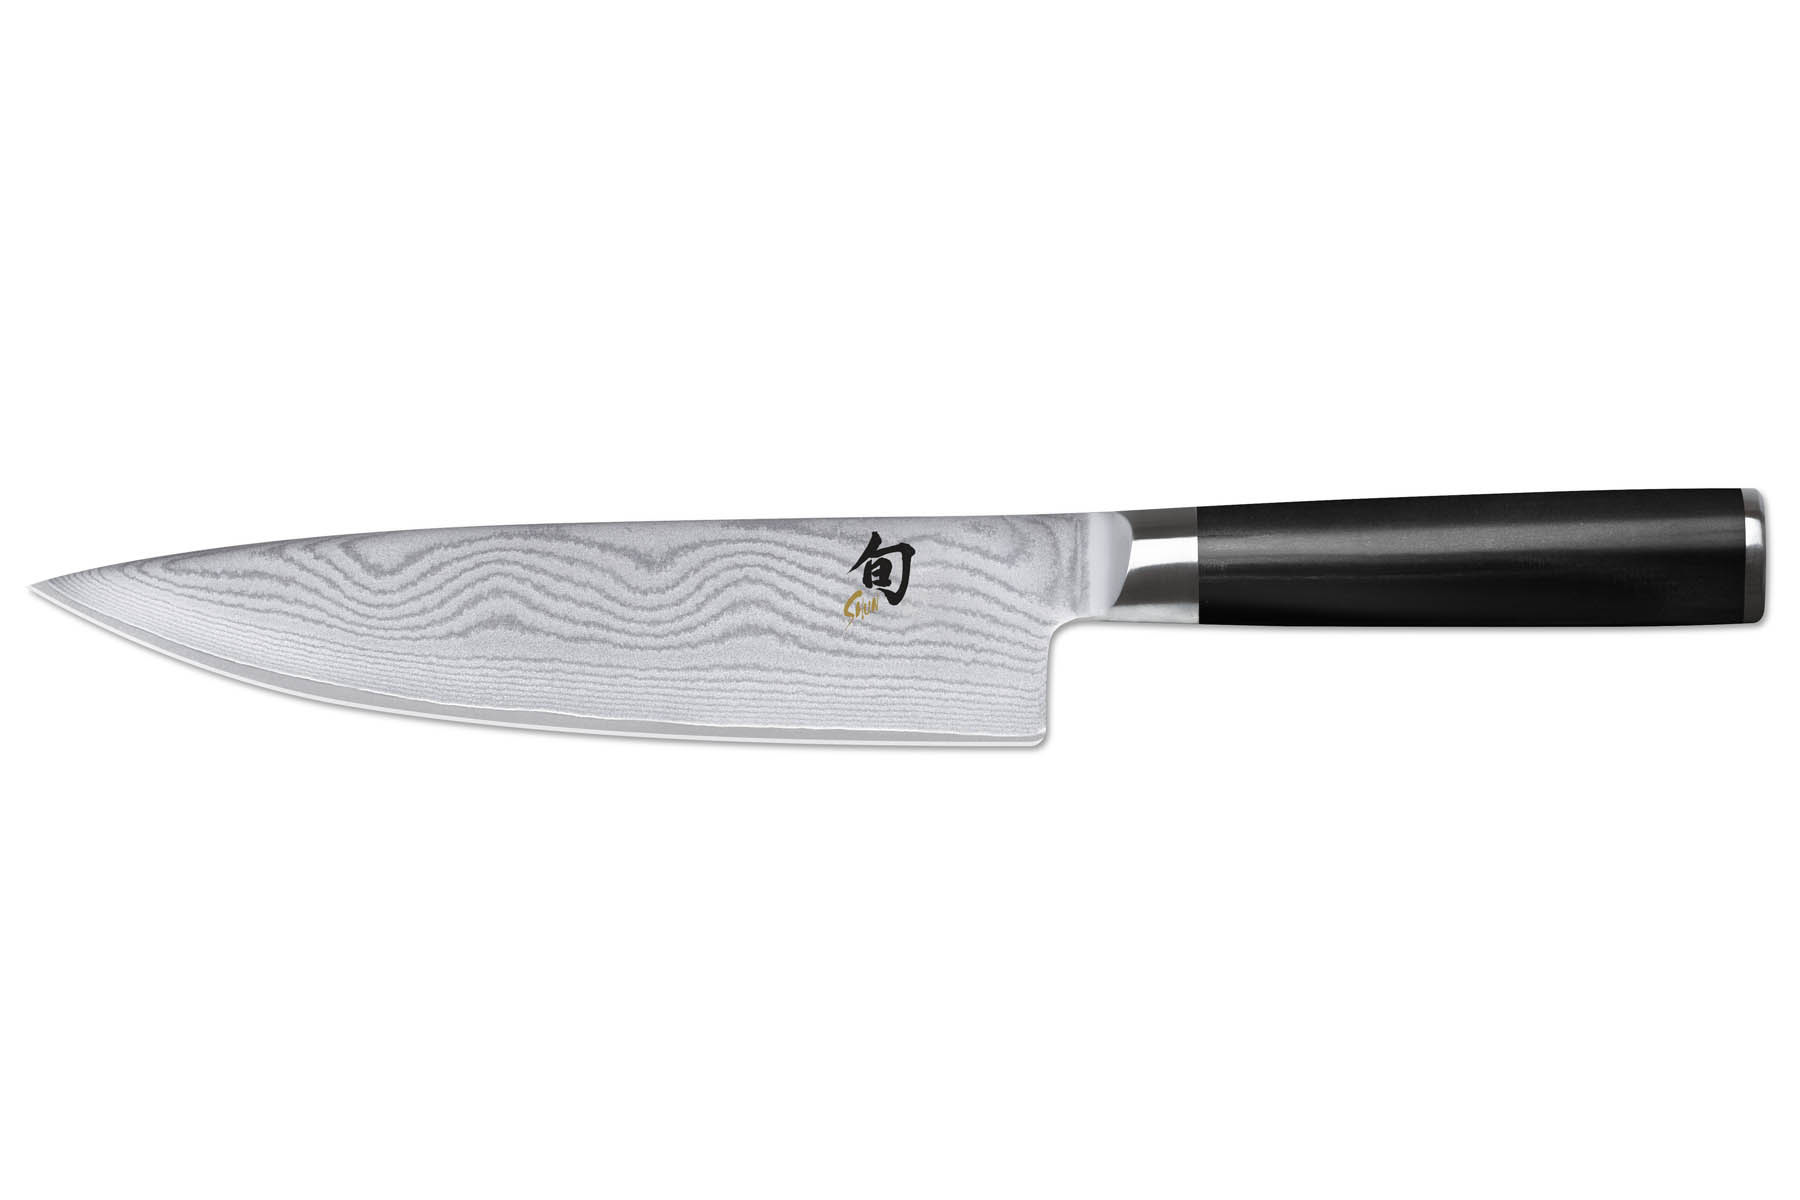 Couteau Japonais Chef 20 cm